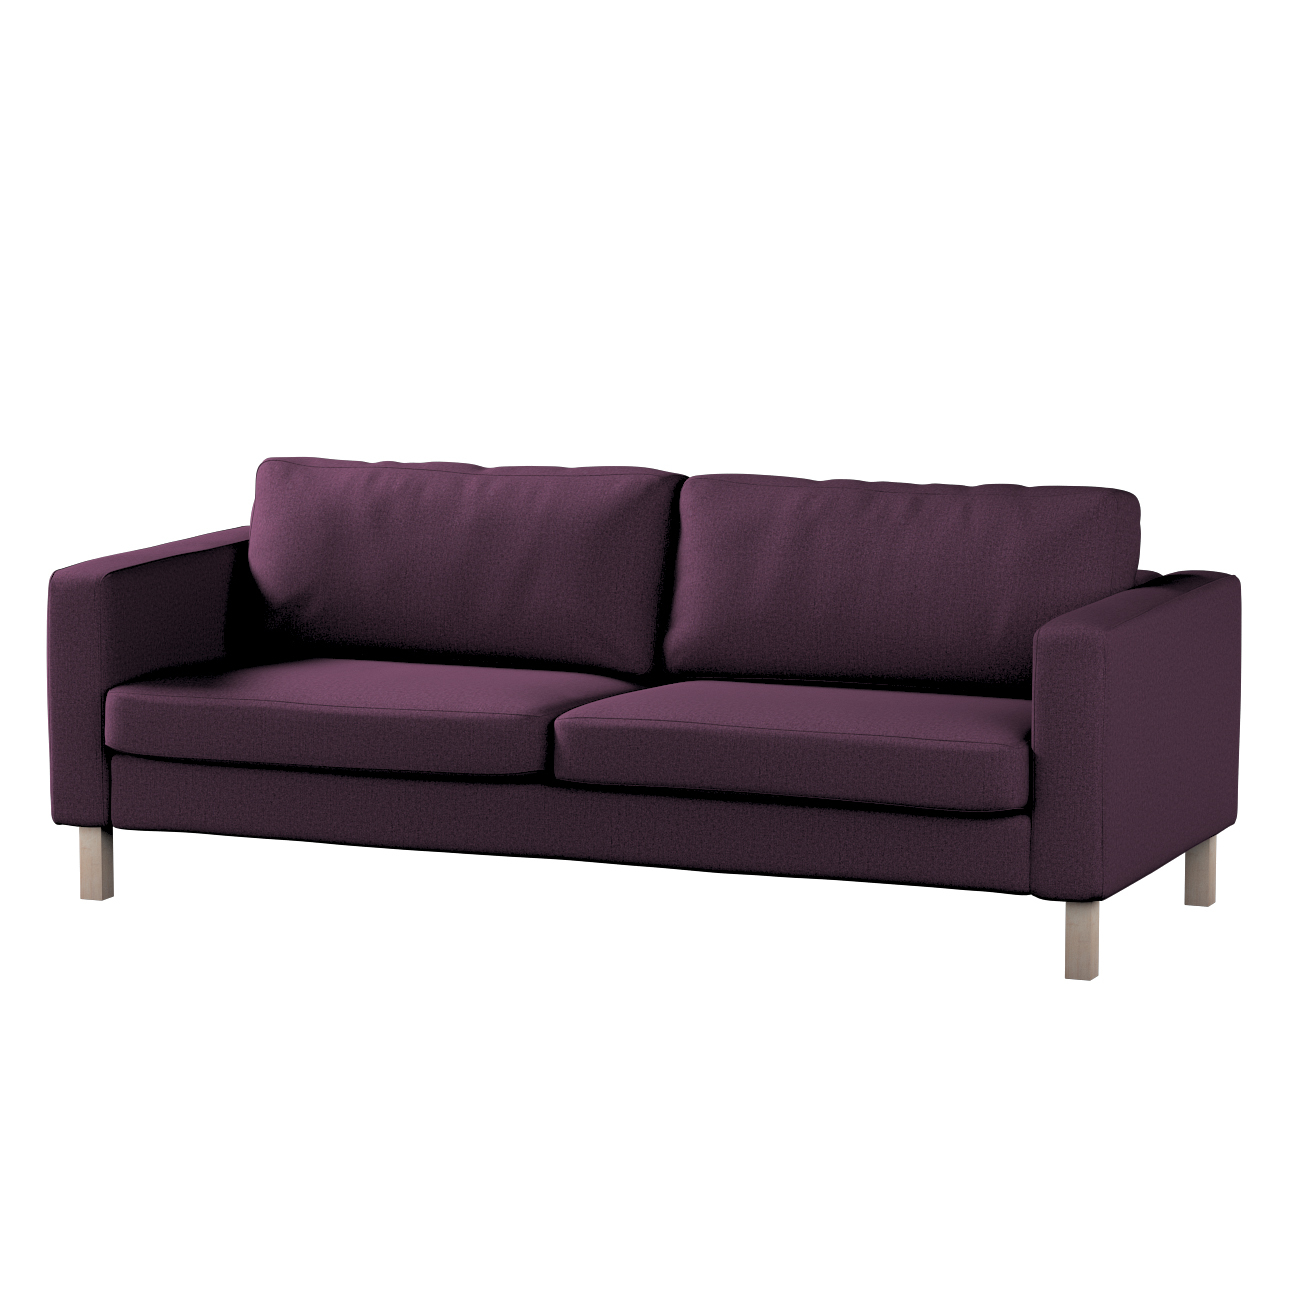 Bezug für Karlstad 3-Sitzer Sofa nicht ausklappbar, kurz, pflaume, Bezug fü günstig online kaufen